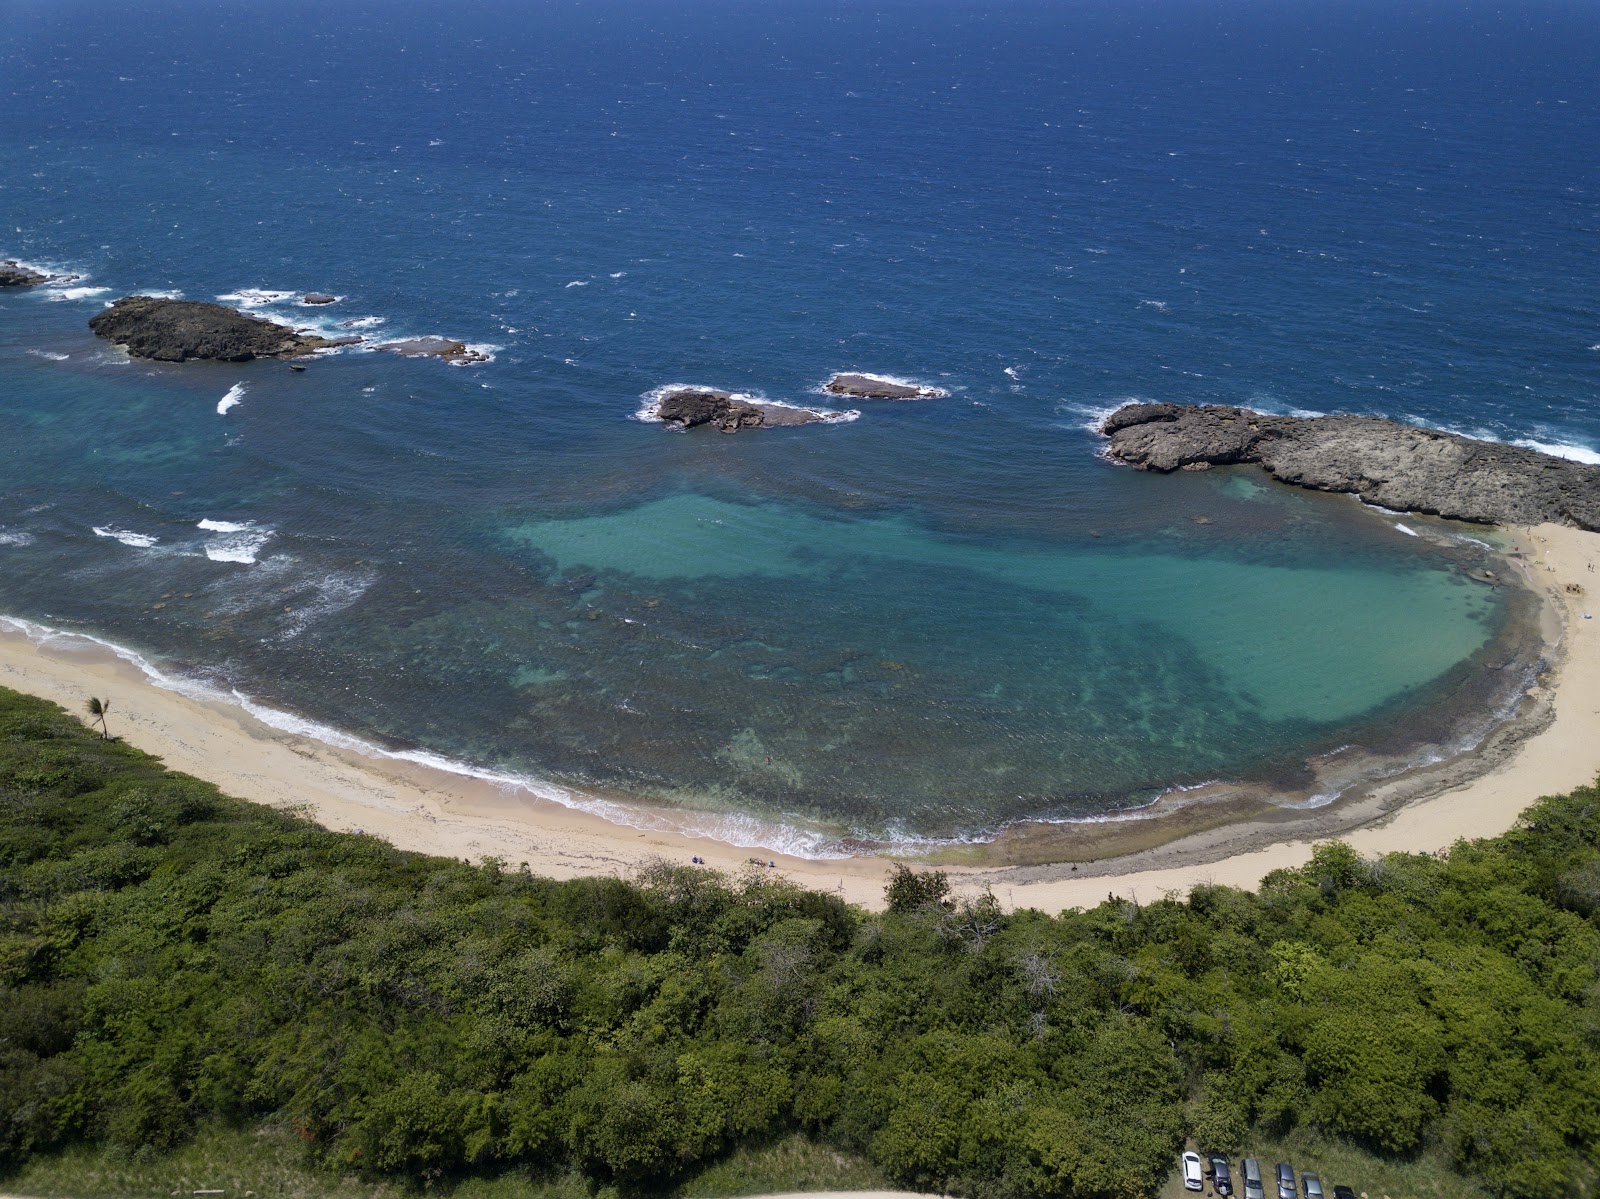 Zdjęcie Playa Tombolo beach z przestronna zatoka